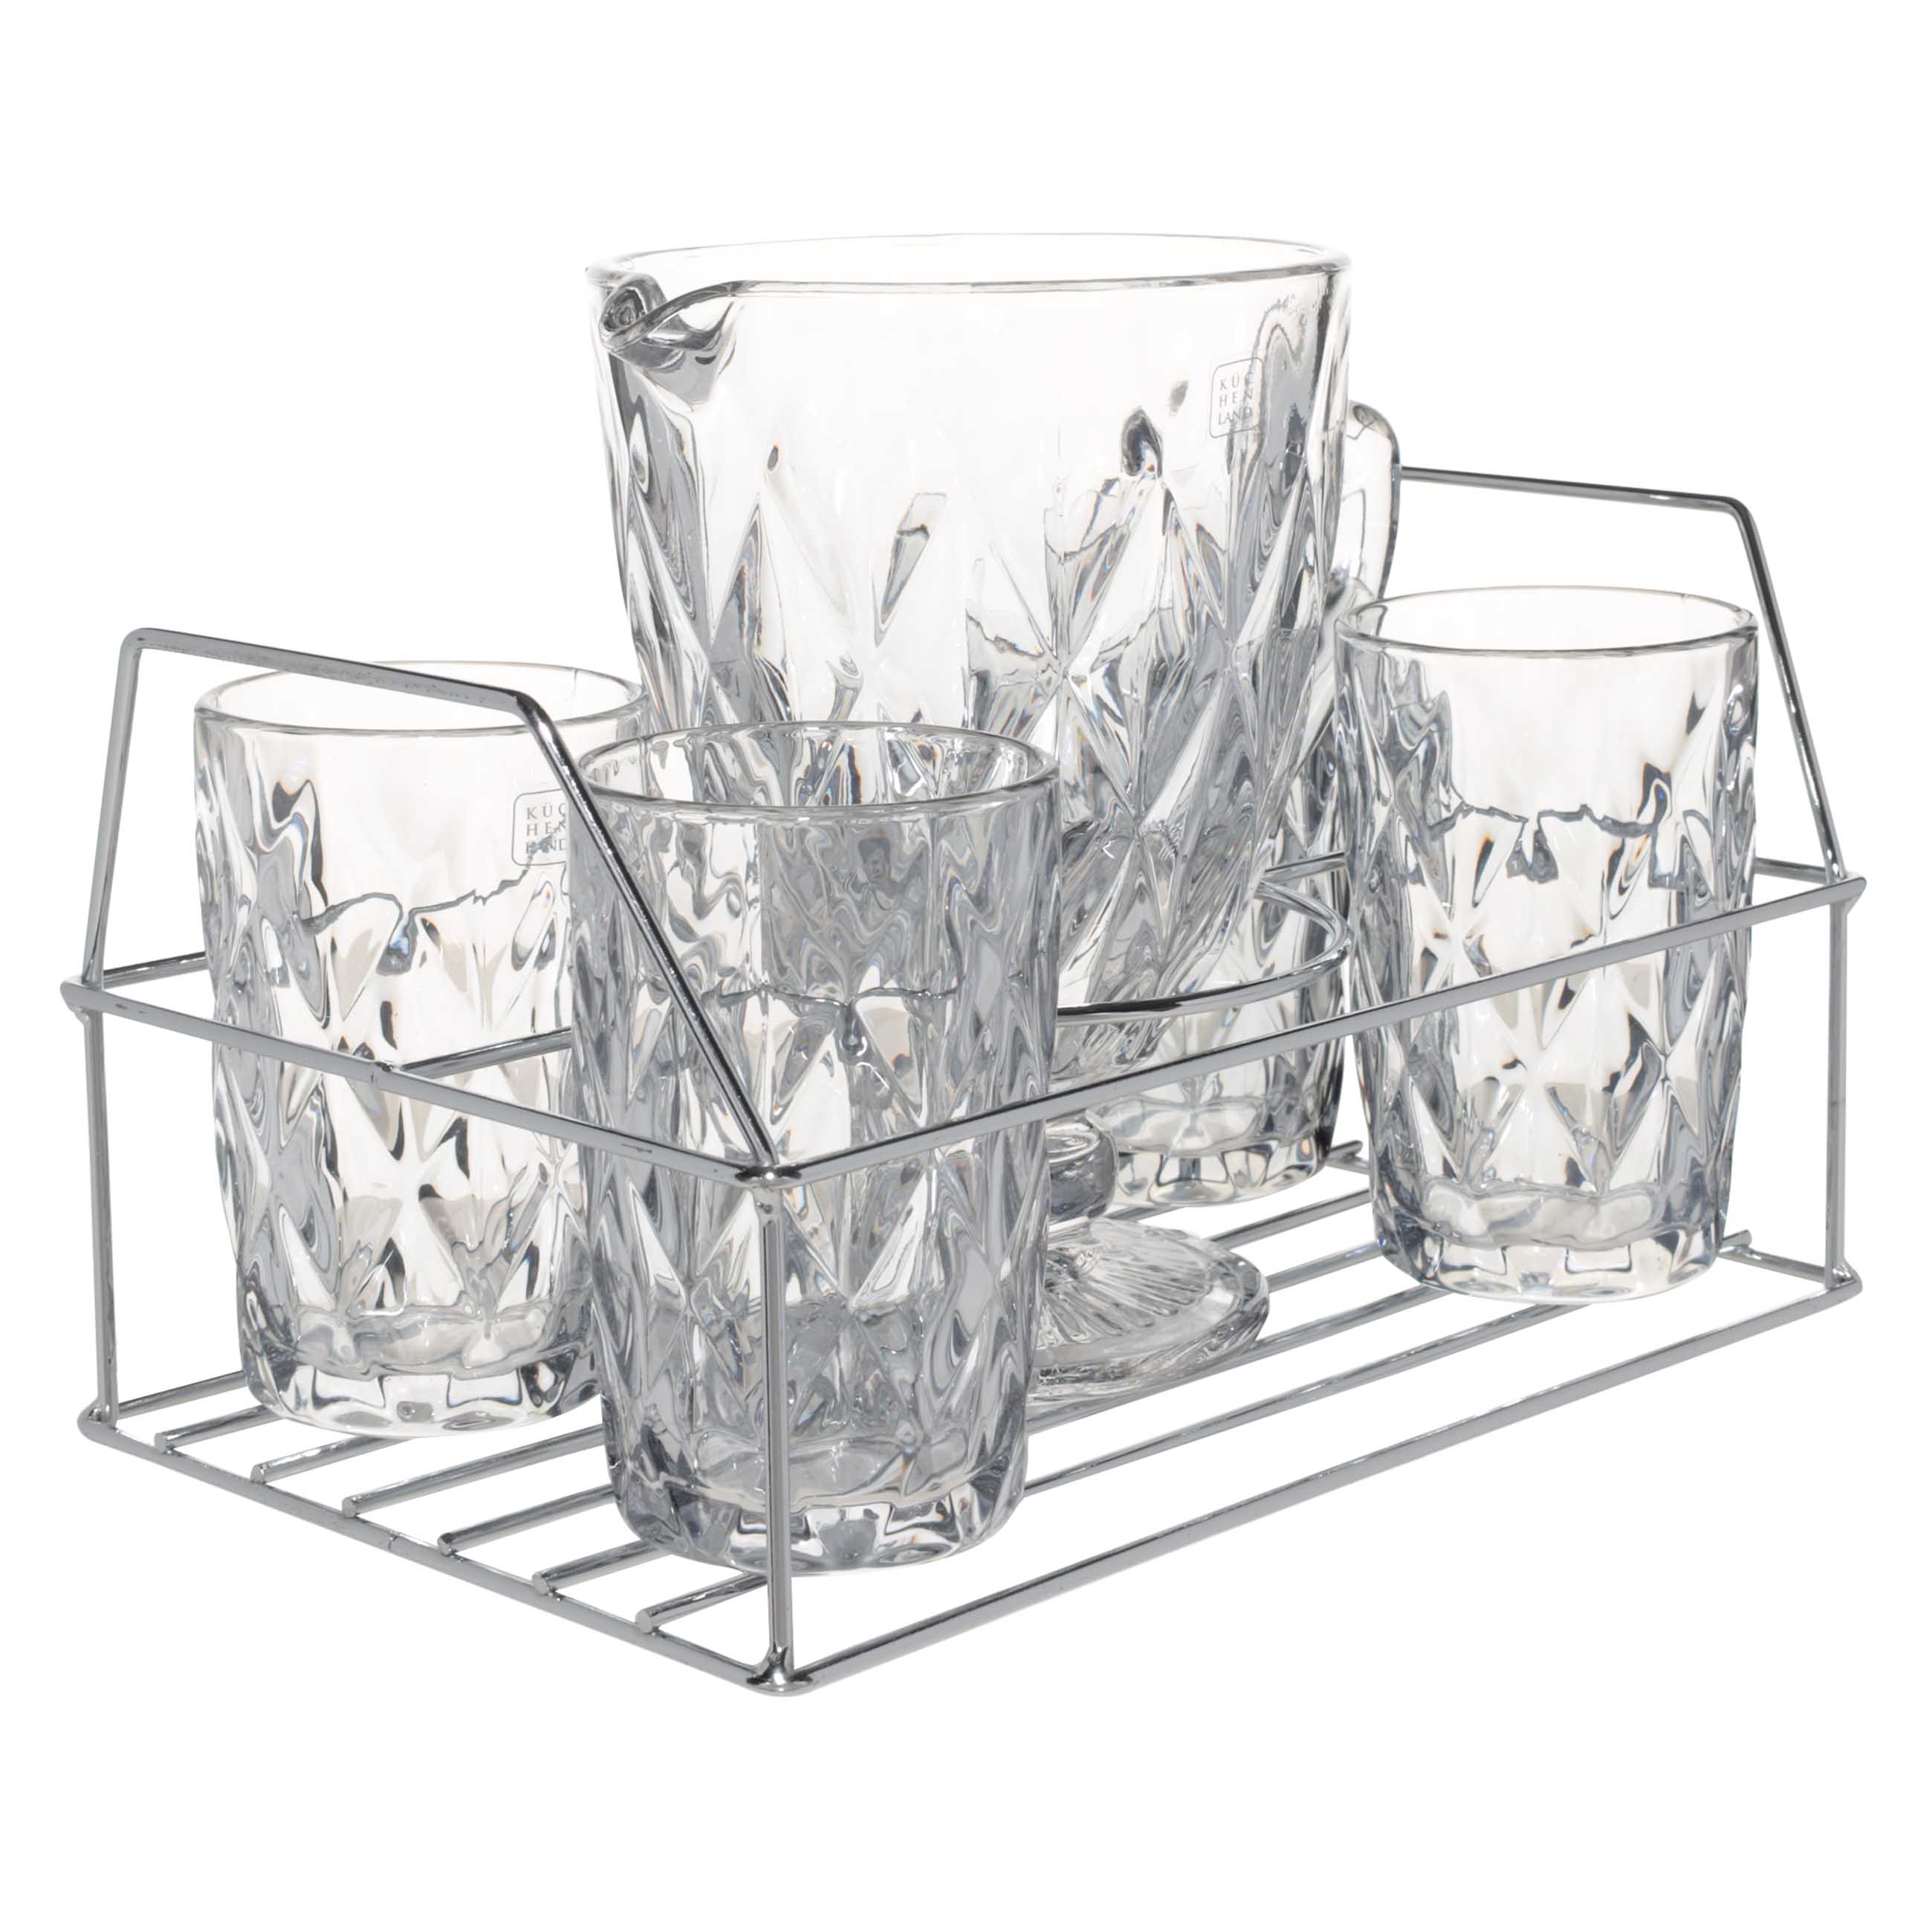 Набор для напитков, 4 перс, 5 пр, на подставке, стекло Р/металл, серый, Rhomb color изображение № 2